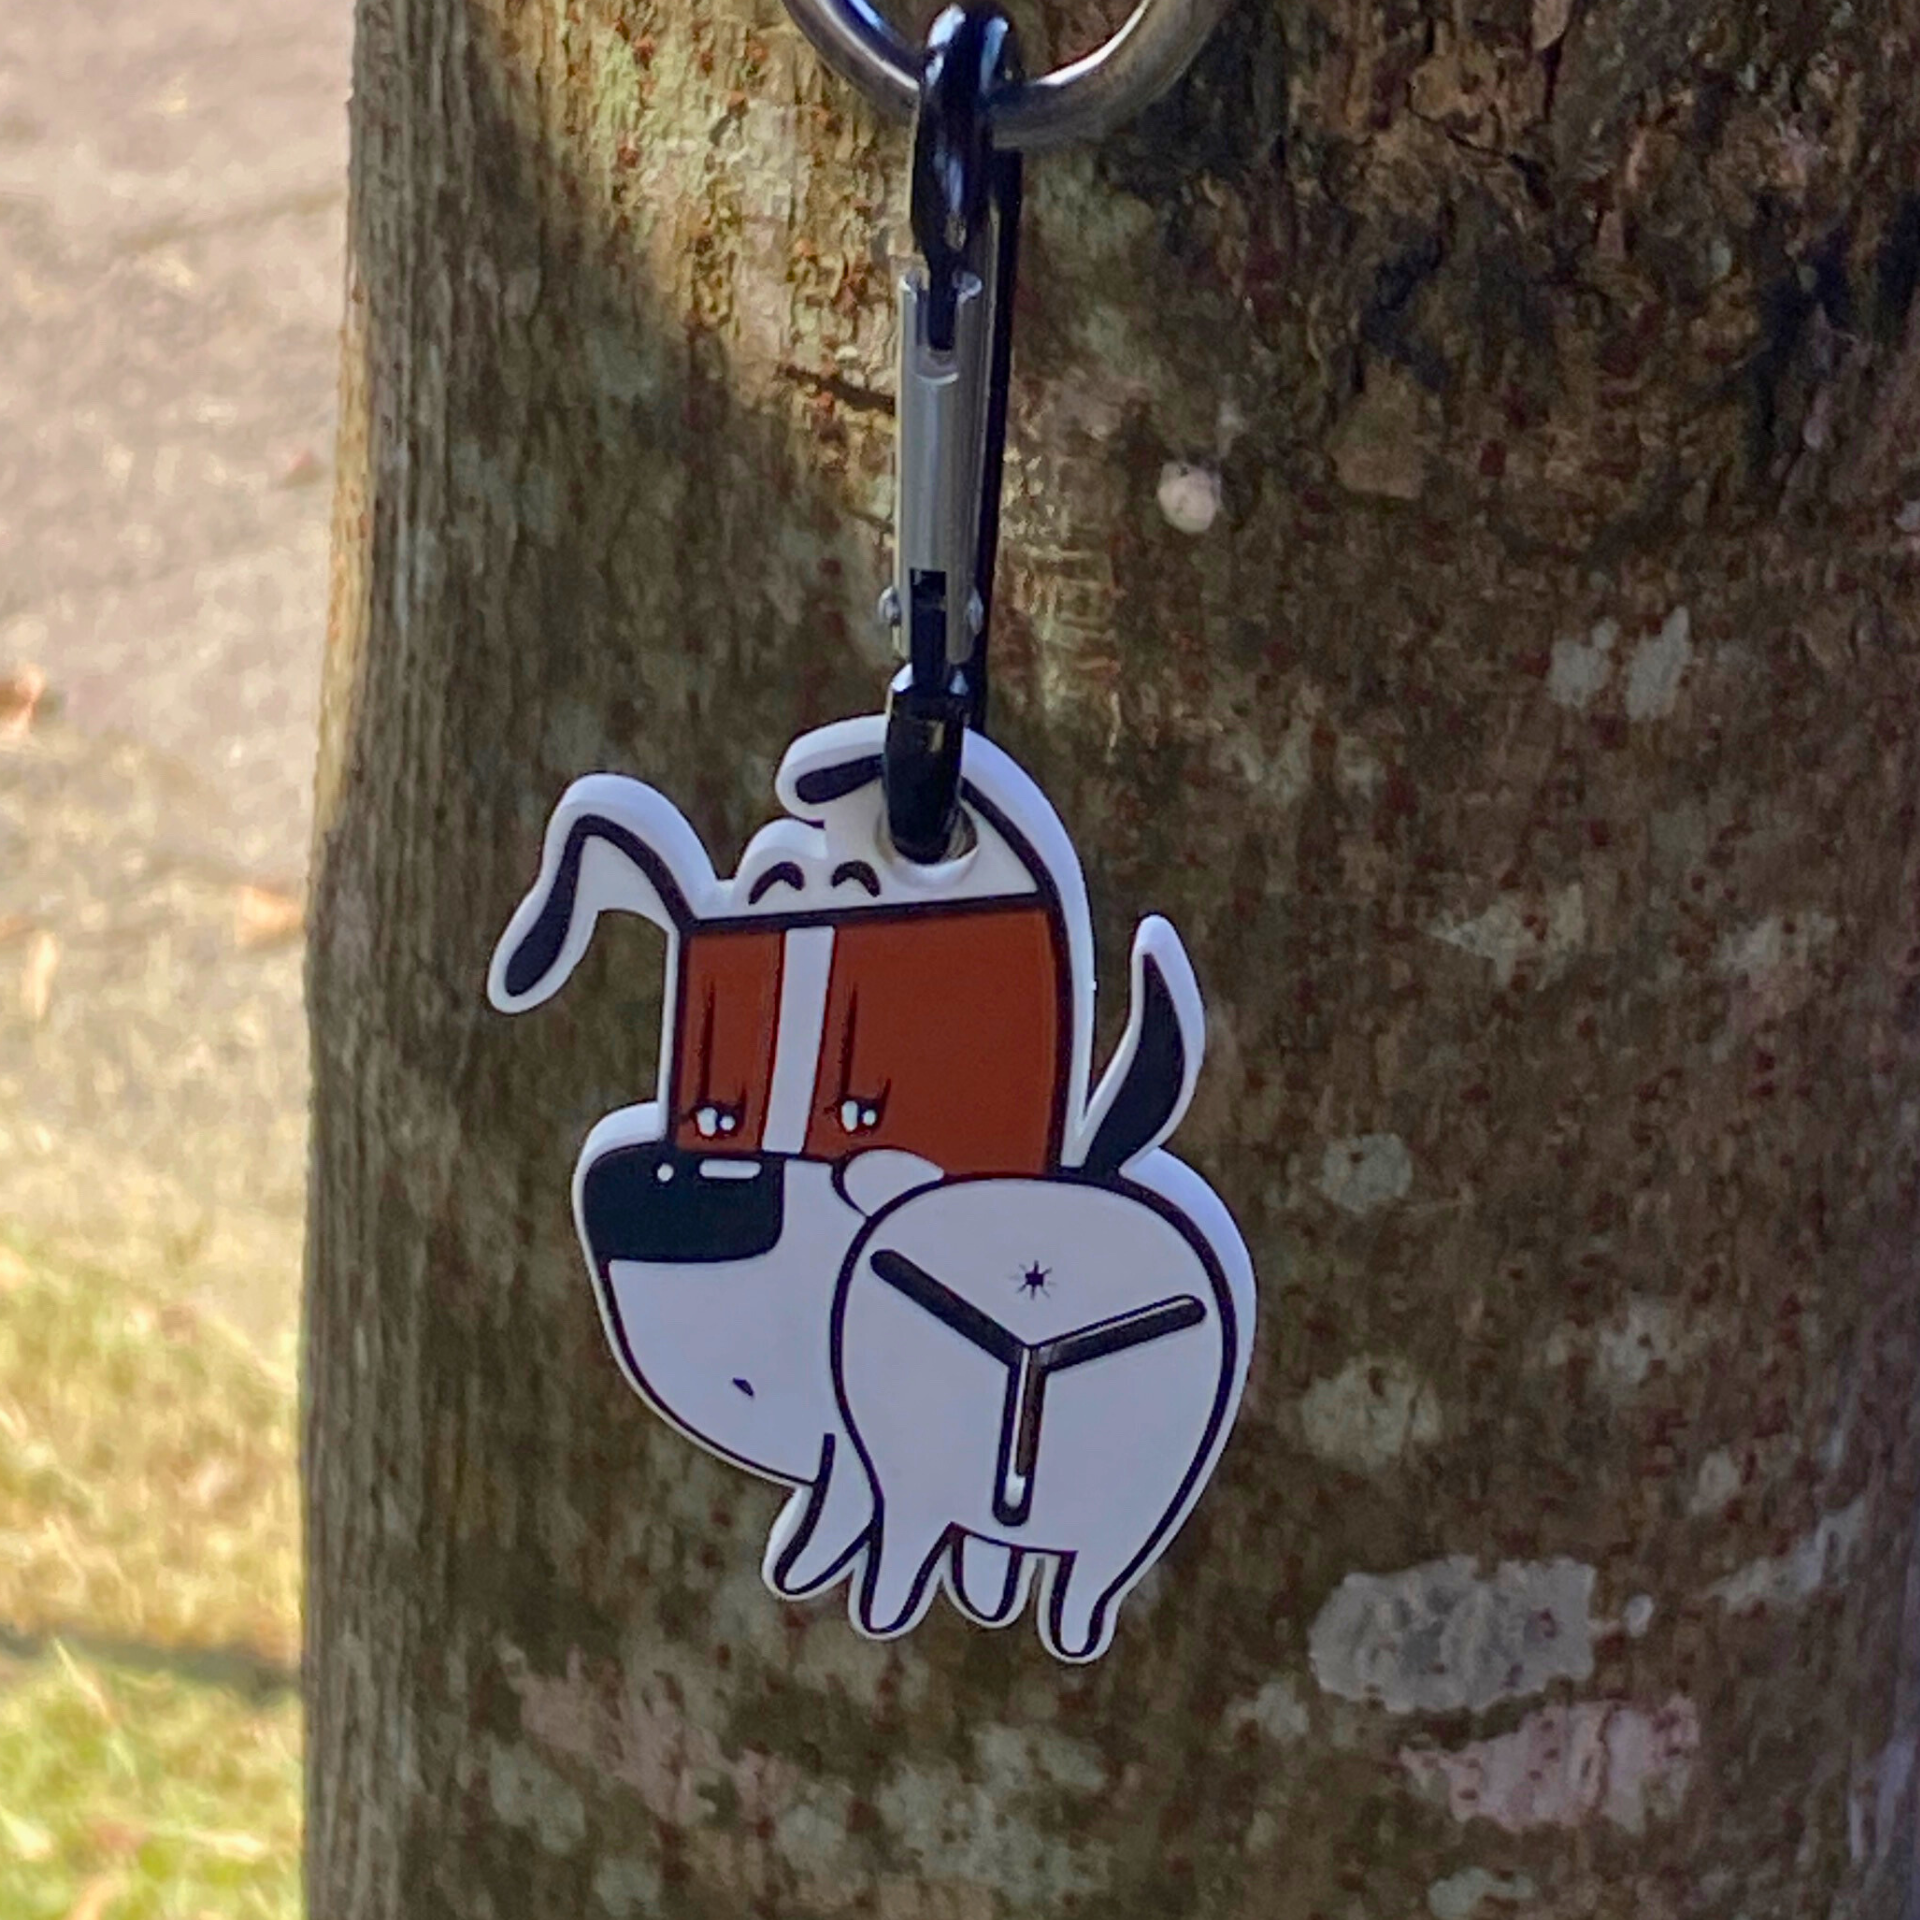 Smart Dog Poop bag holder pal accessory 